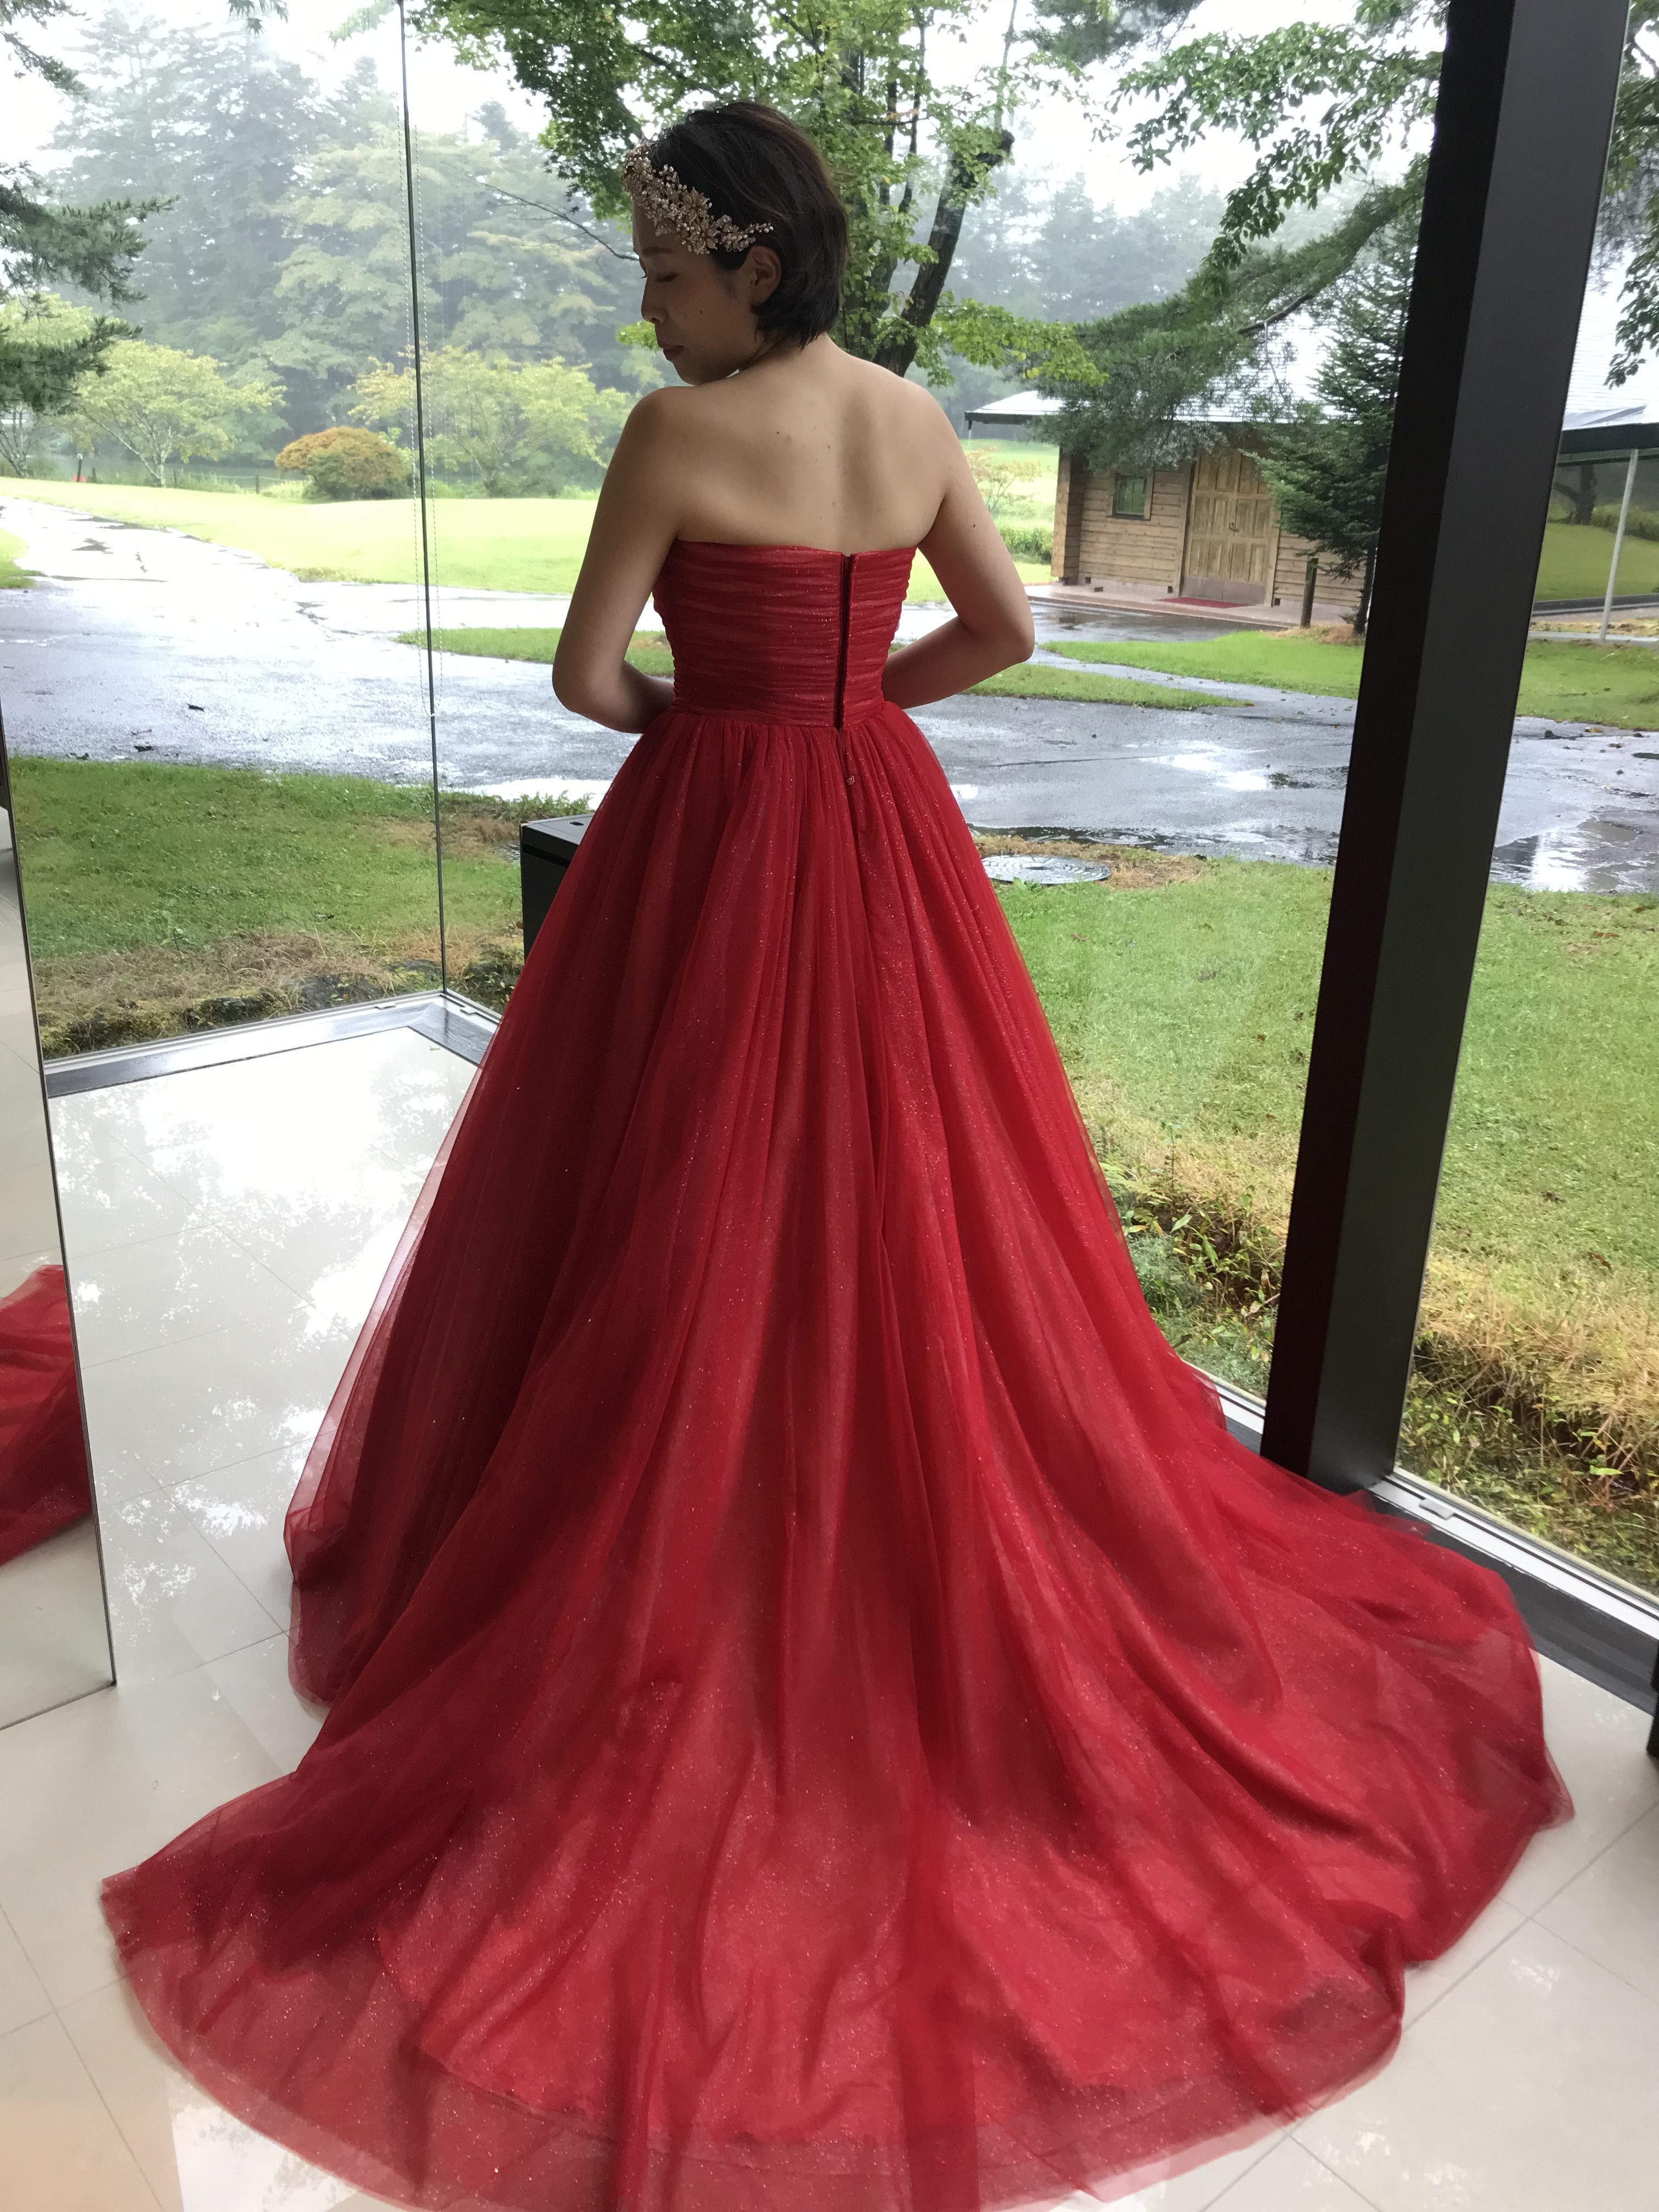 オリジナル 美しい赤ドレス 1920x1200